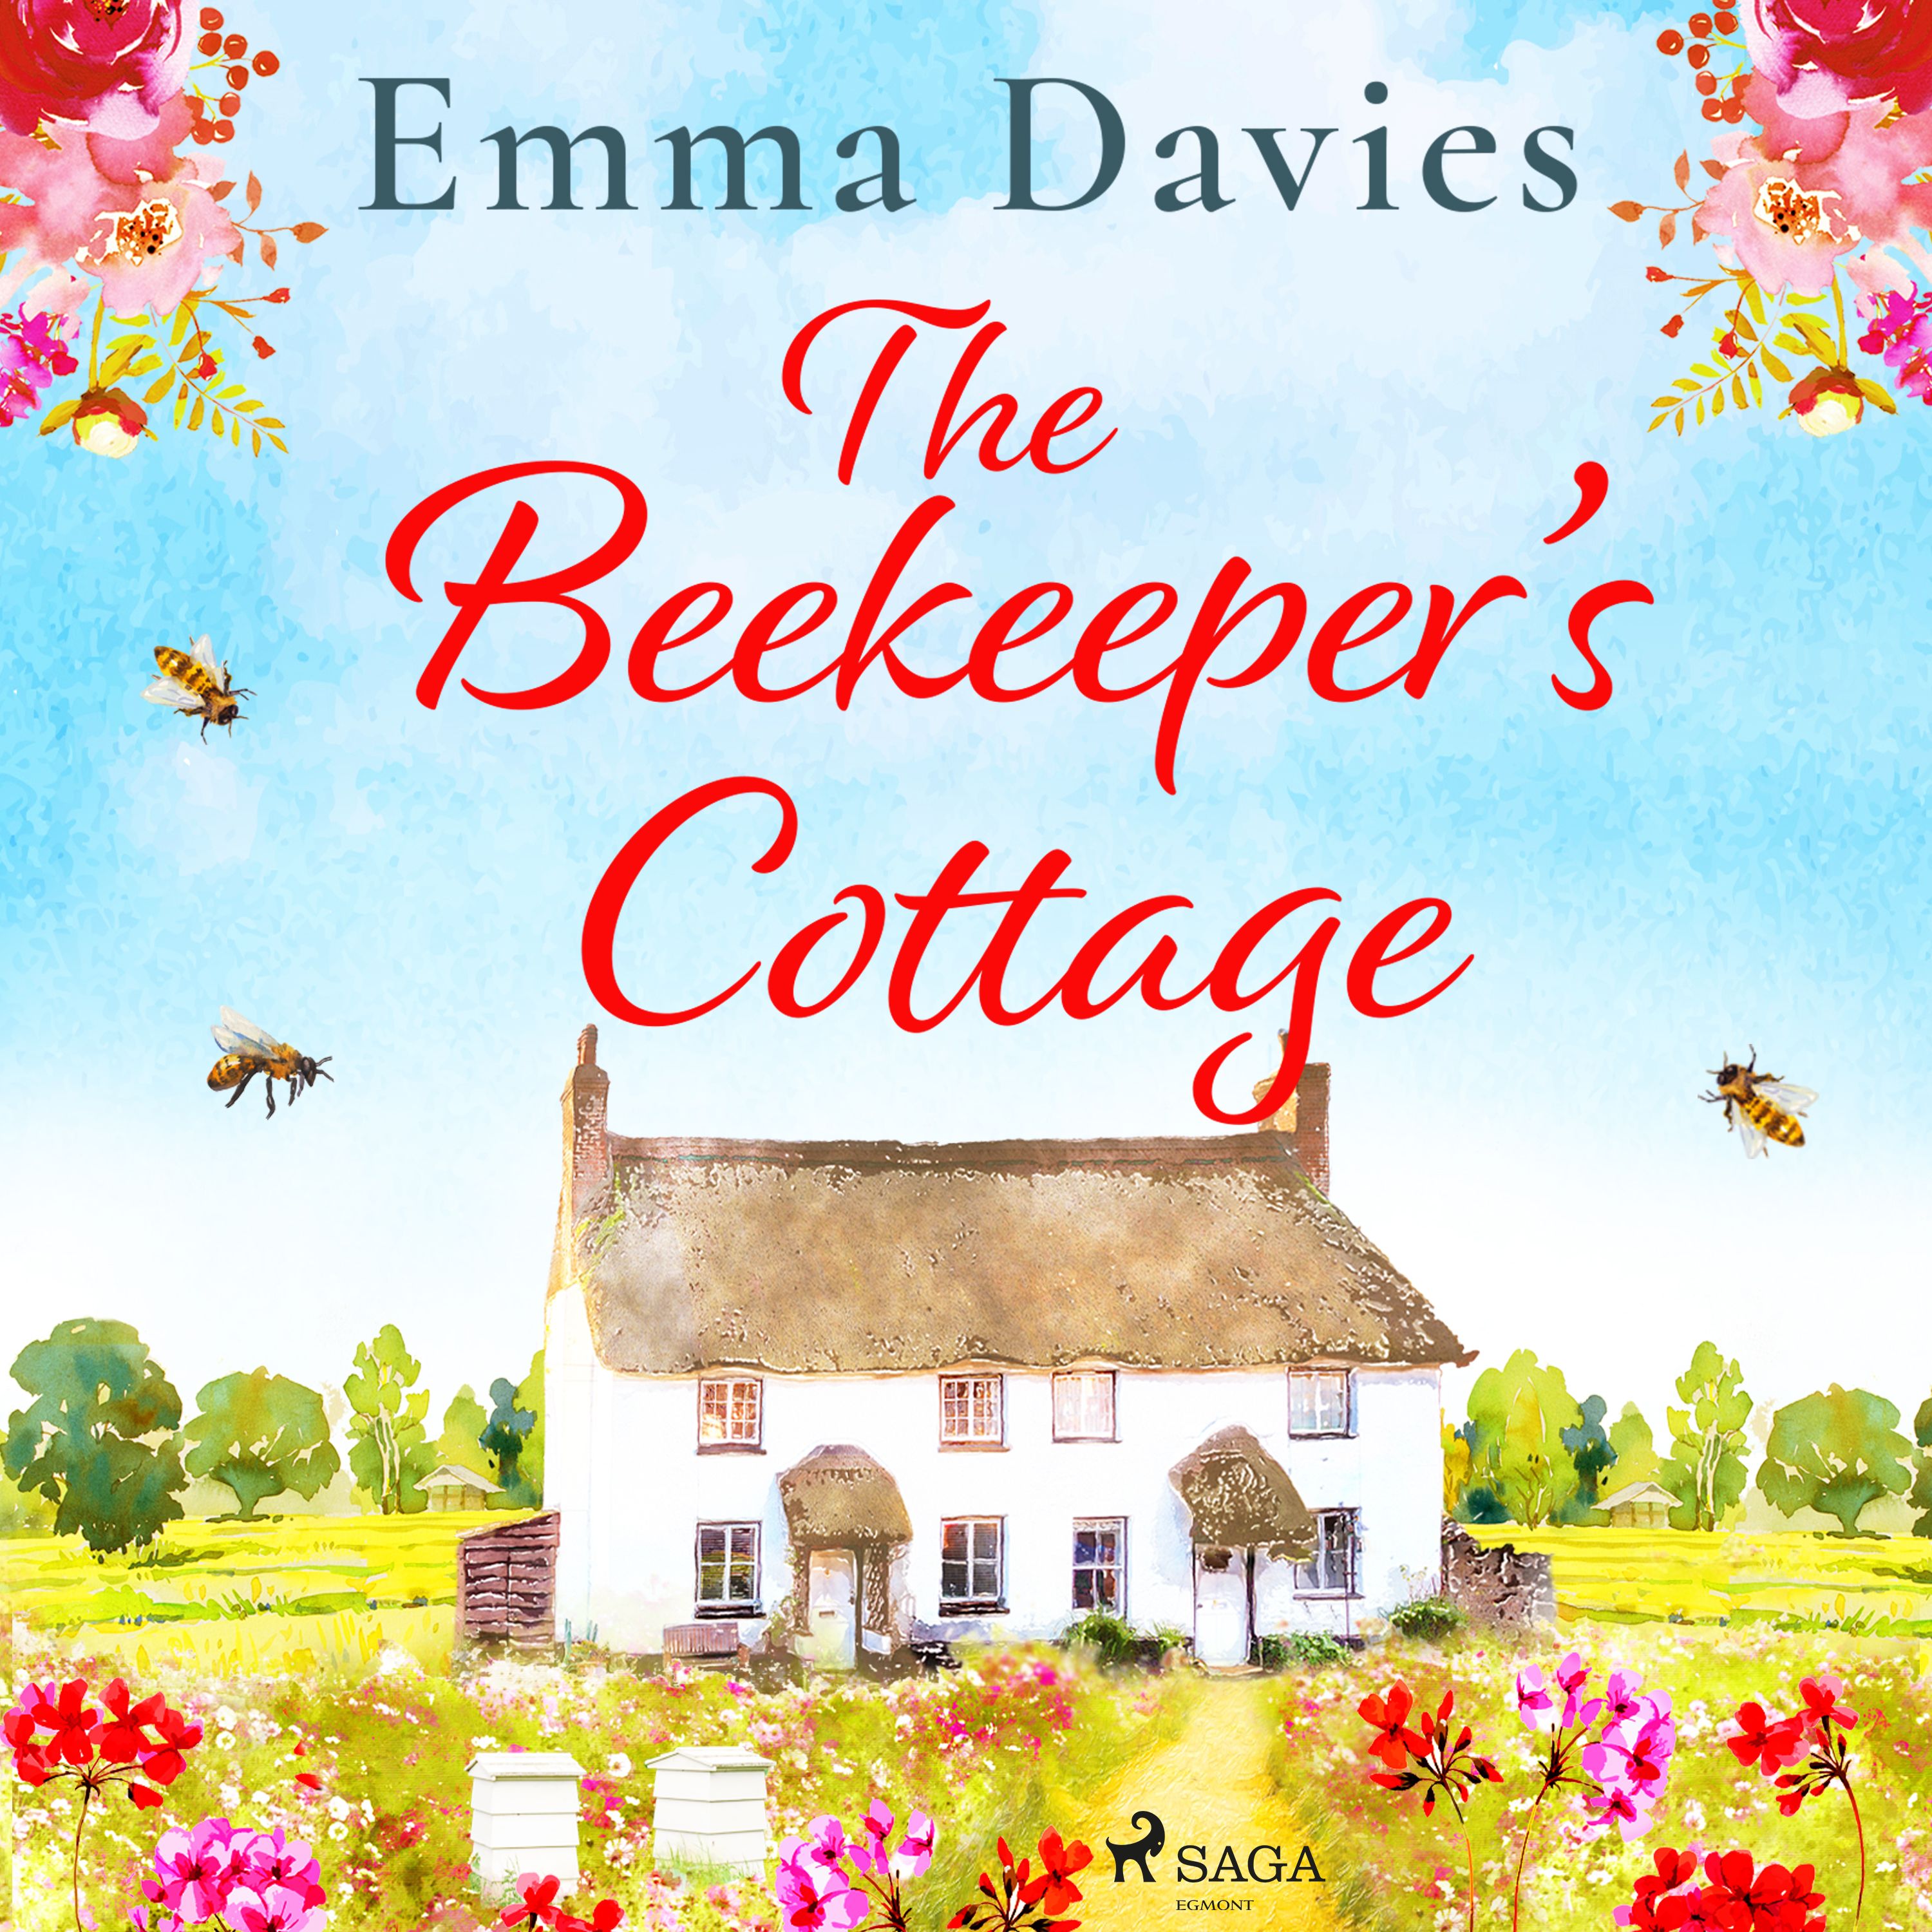 The Beekeeper's Cottage, ljudbok av Emma Davies